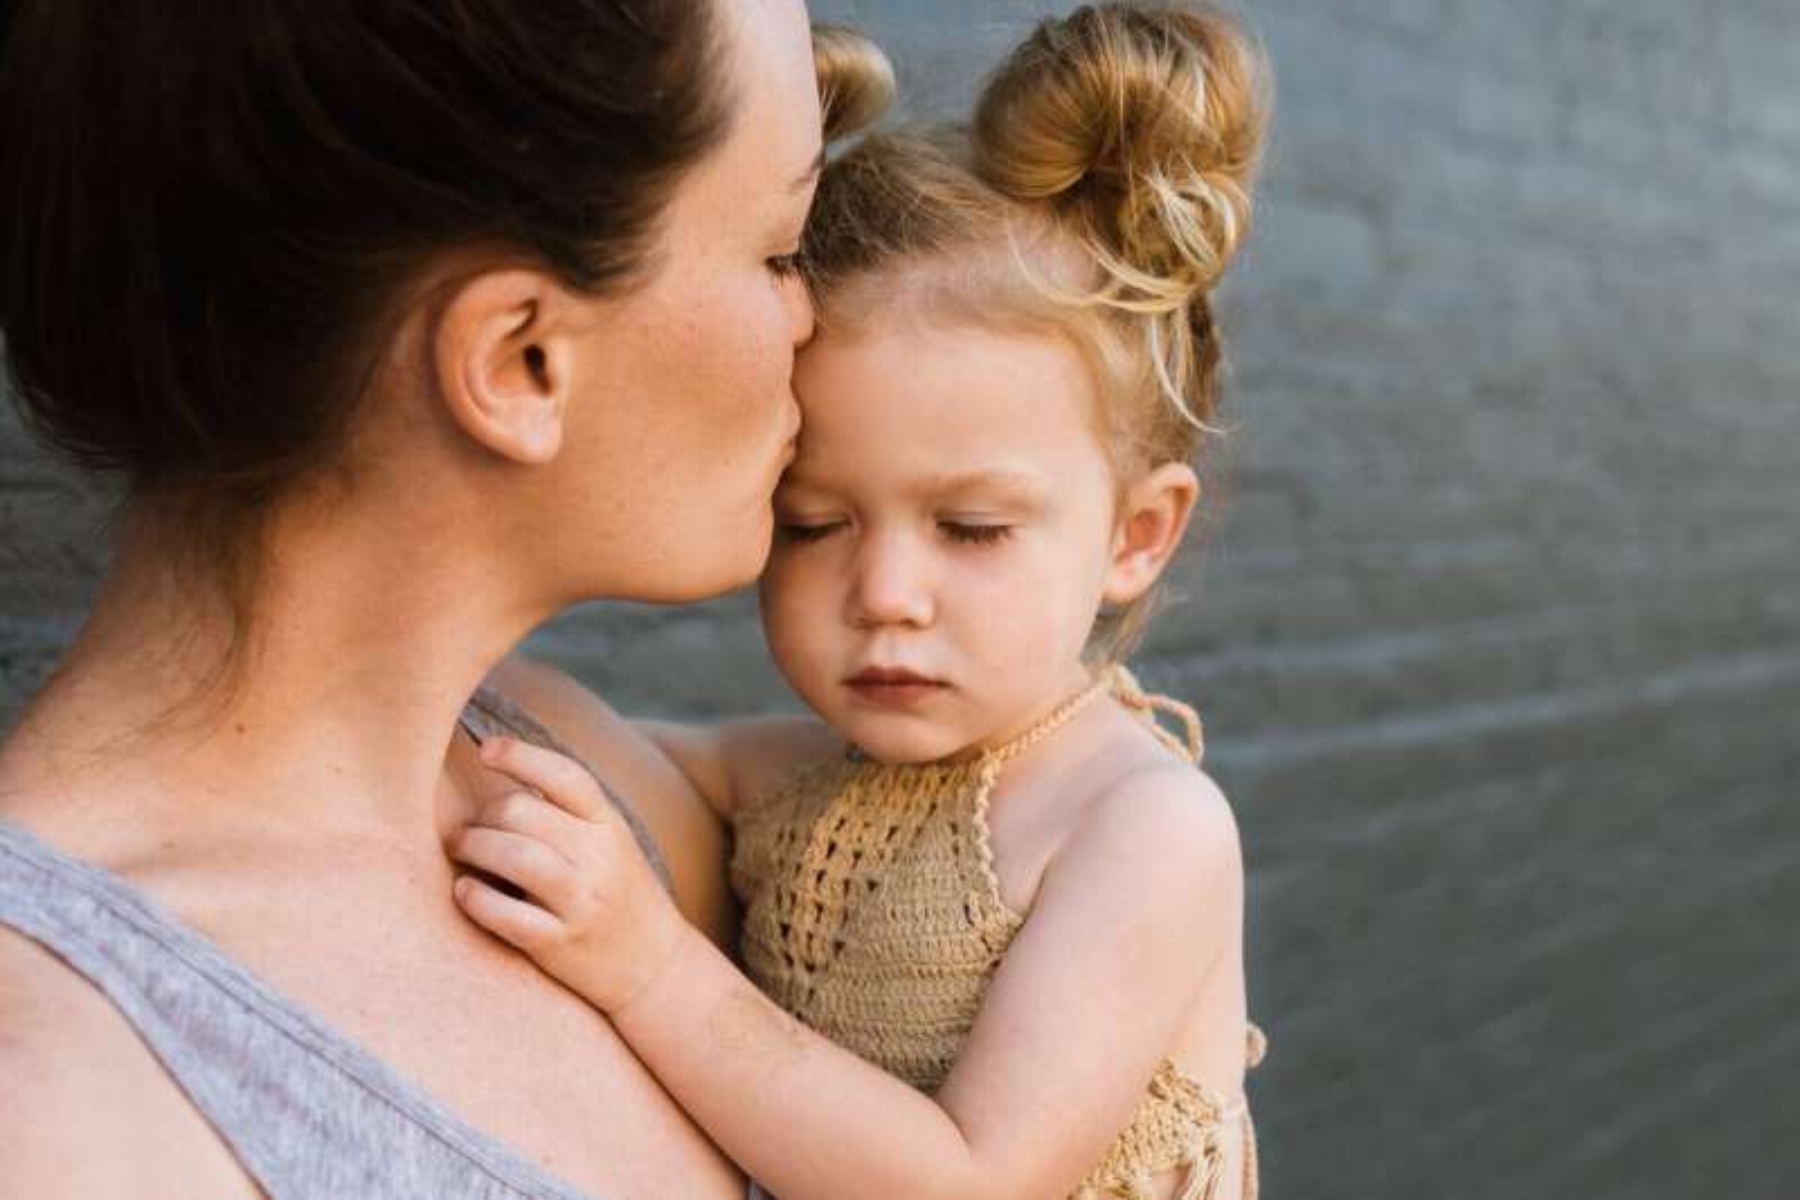 Παιδιά εγκέφαλος: Η μητρική κοινωνικοποίηση διαμορφώνει τη δραστηριότητα του εγκεφάλου του παιδιού